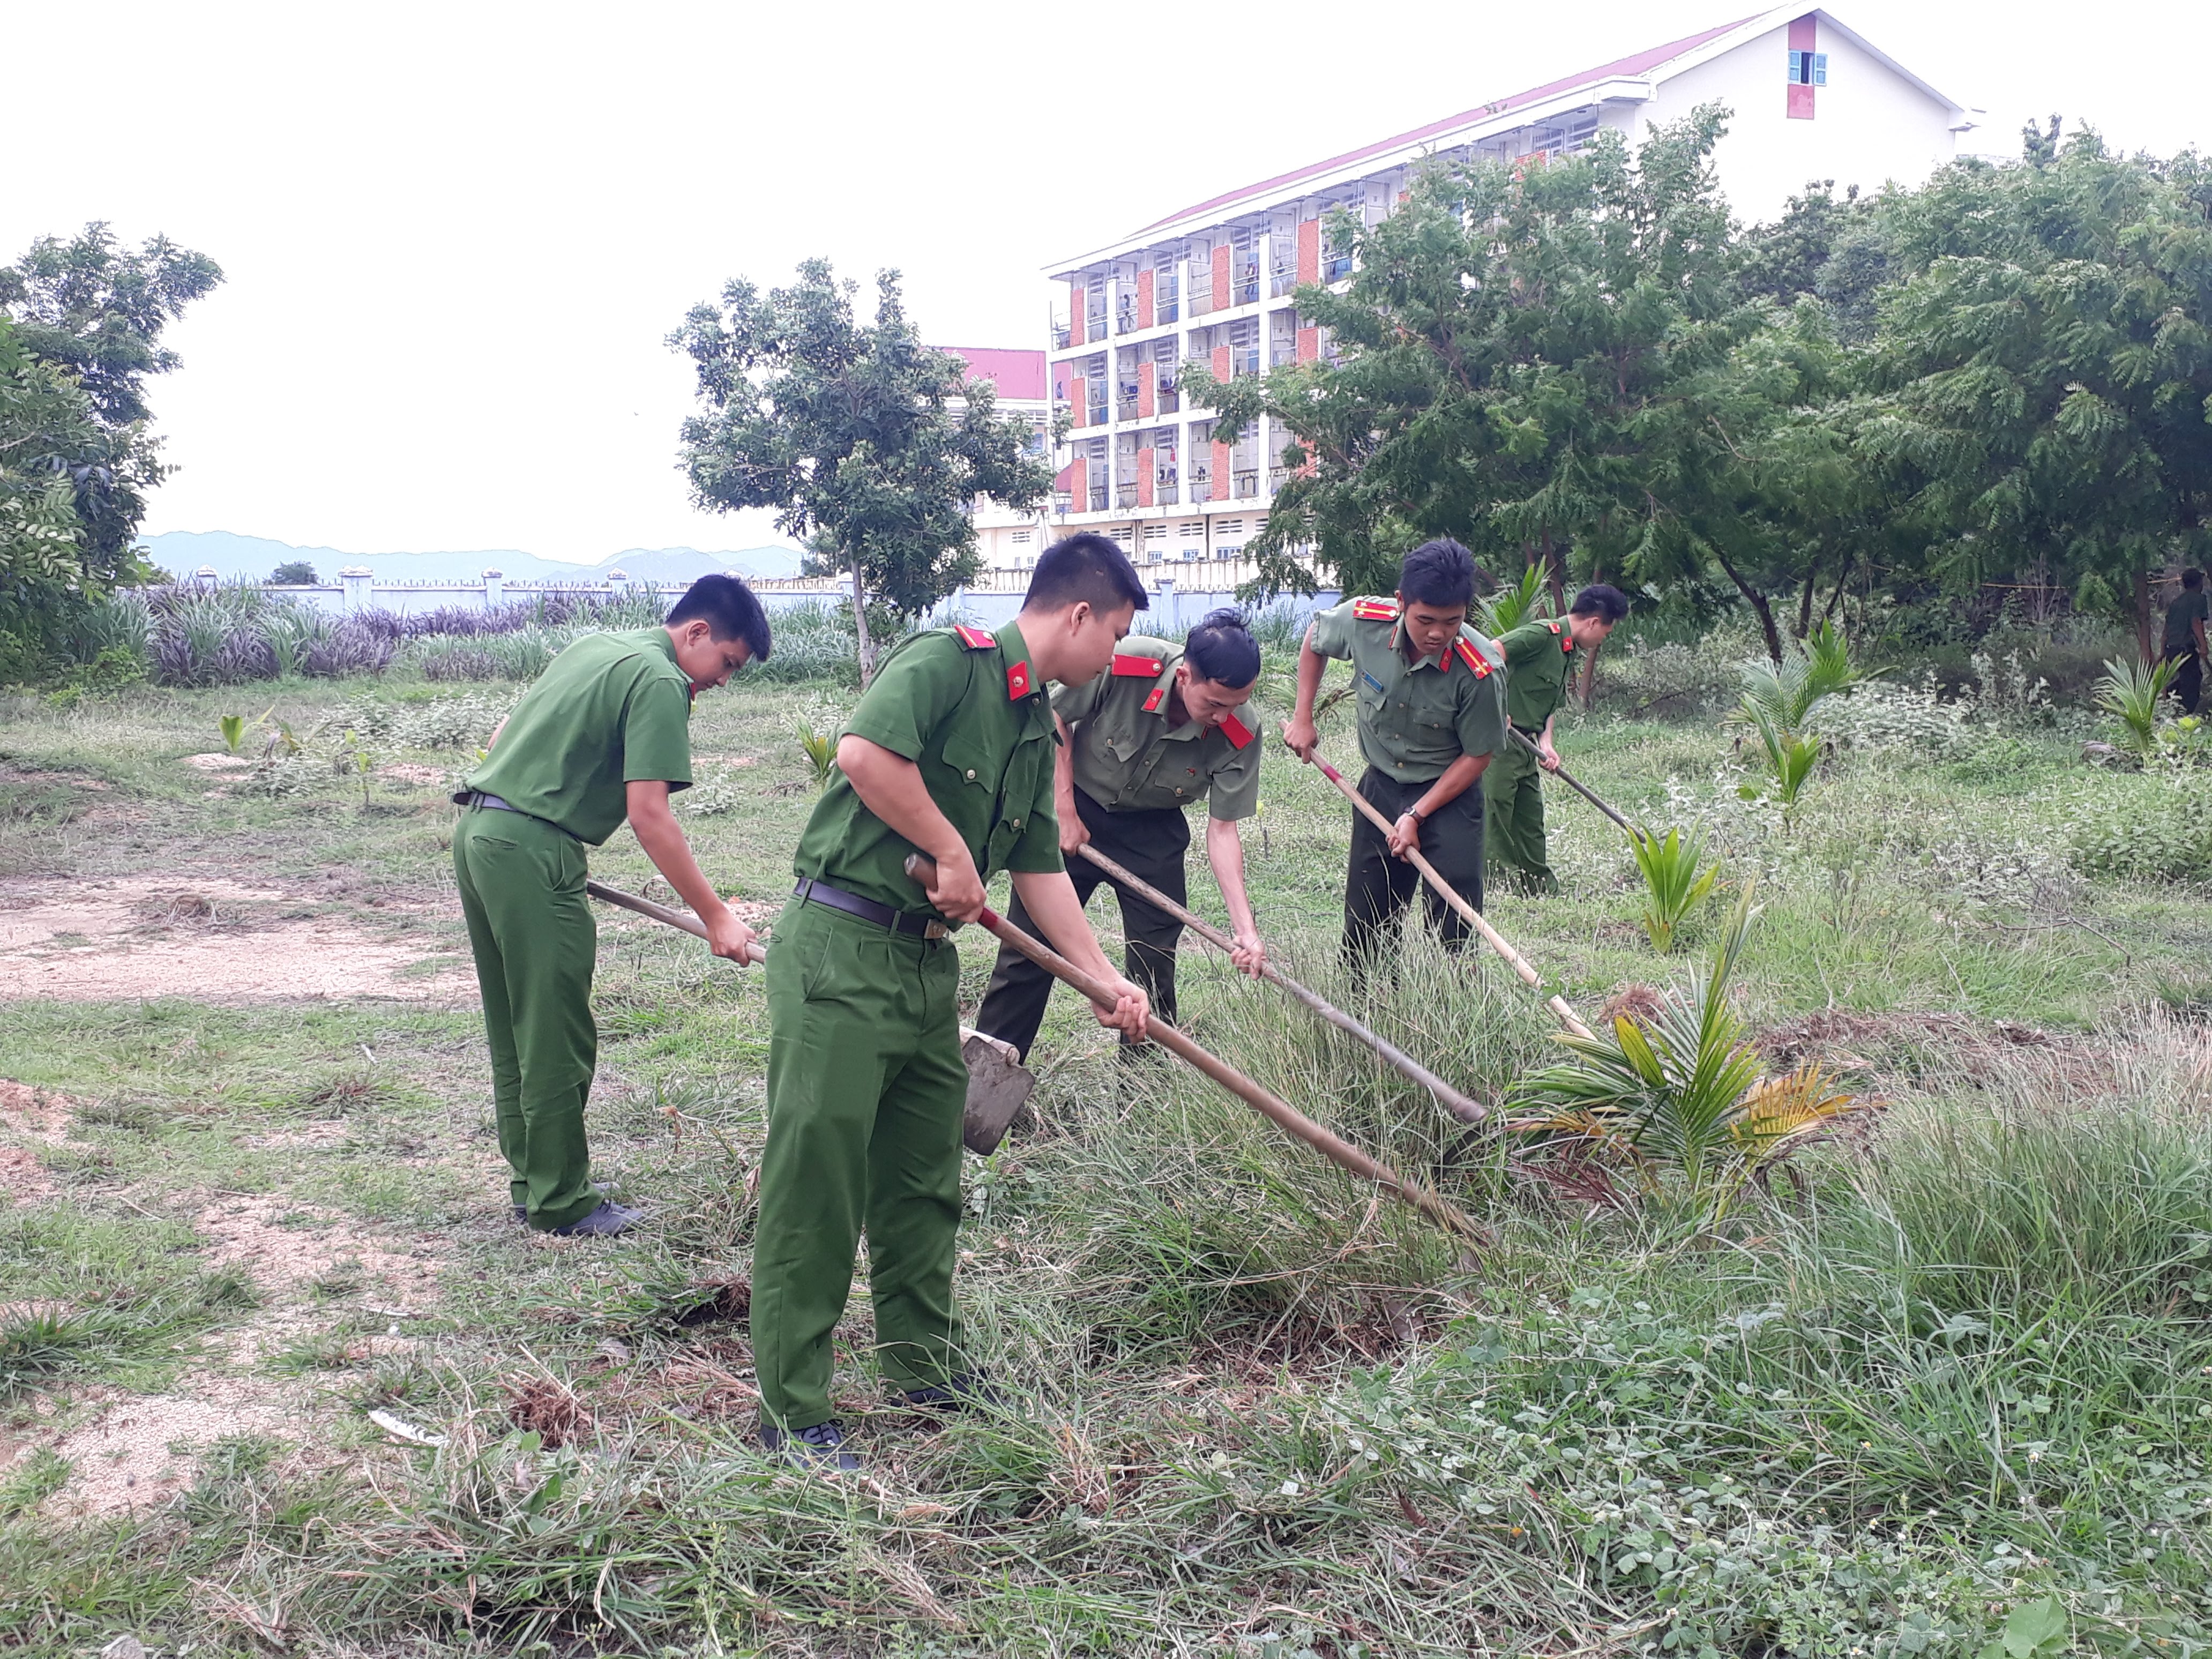 Cán bộ, giáo viên, nhân viên Trung tâm Hỗ trợ phát triển giáo dục hòa nhập tỉnh Ninh Thuận phối hợp với Đoàn TNCS Hồ Chí Minh Công an huyện Ninh Phước tiến hành cải tạo môi trường Trung tâm xanh-sạch-đẹp.